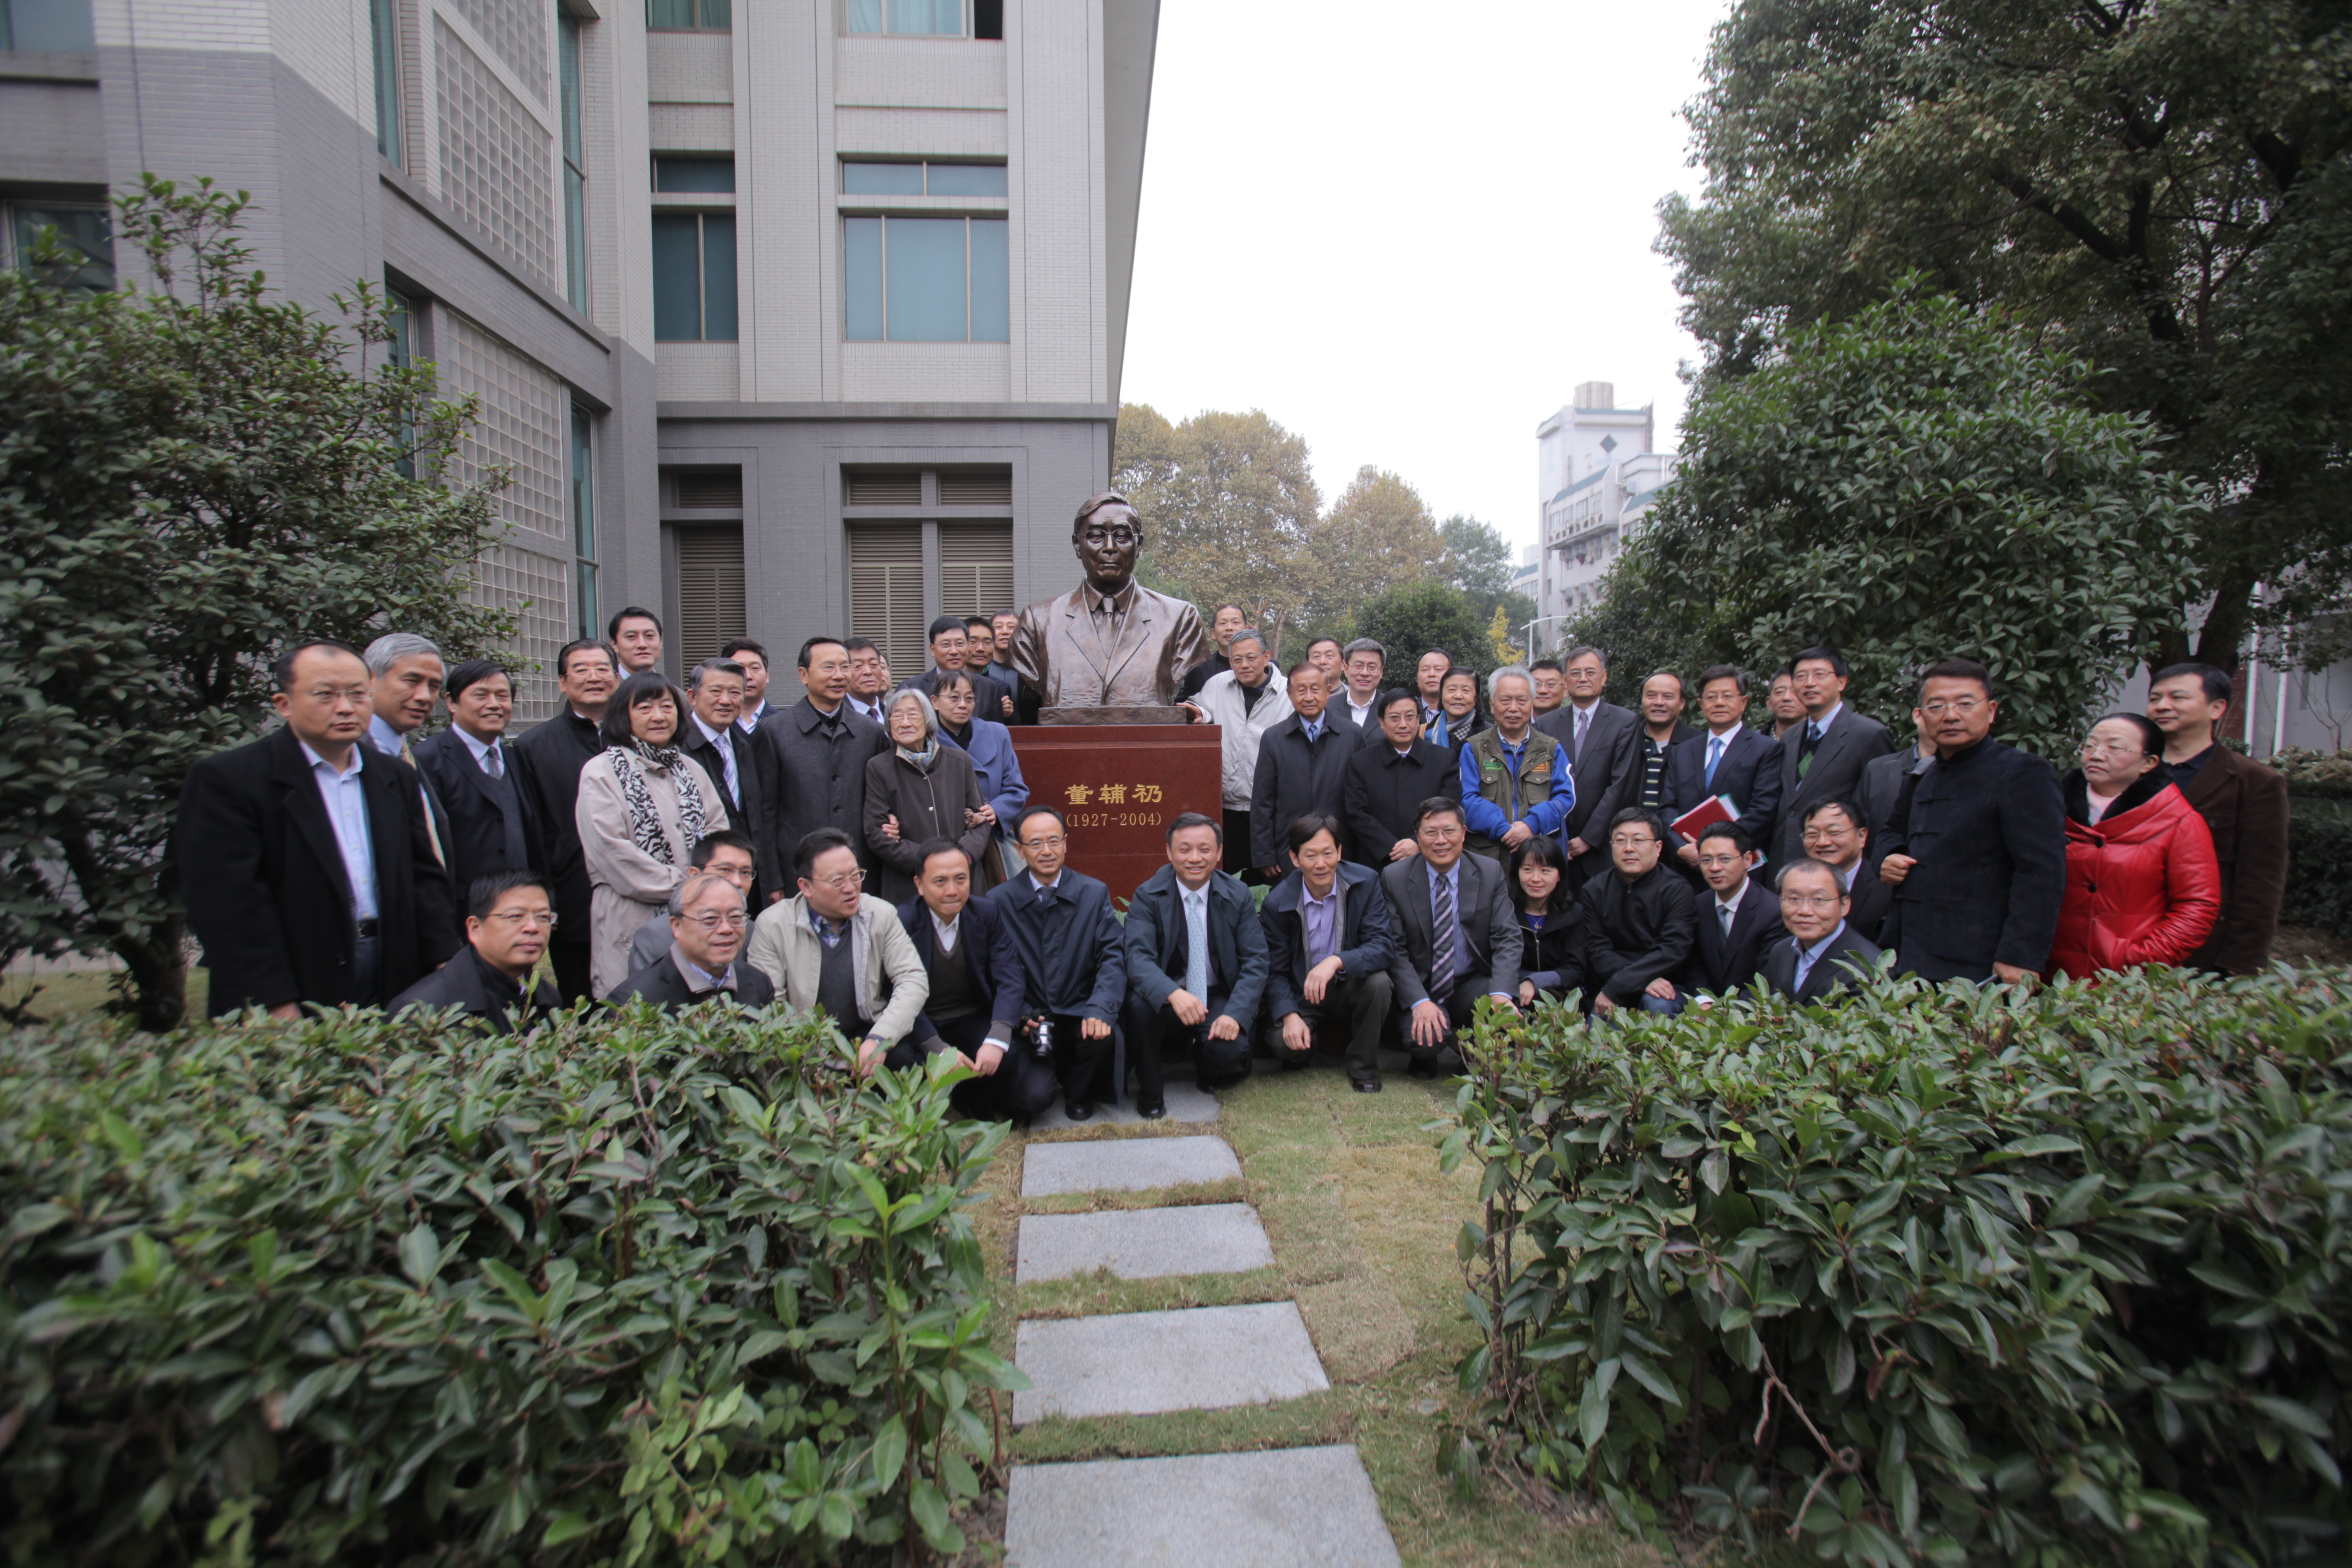 董辅礽先生雕像落成暨揭幕仪式在我院举行-武汉大学经济与管理学院